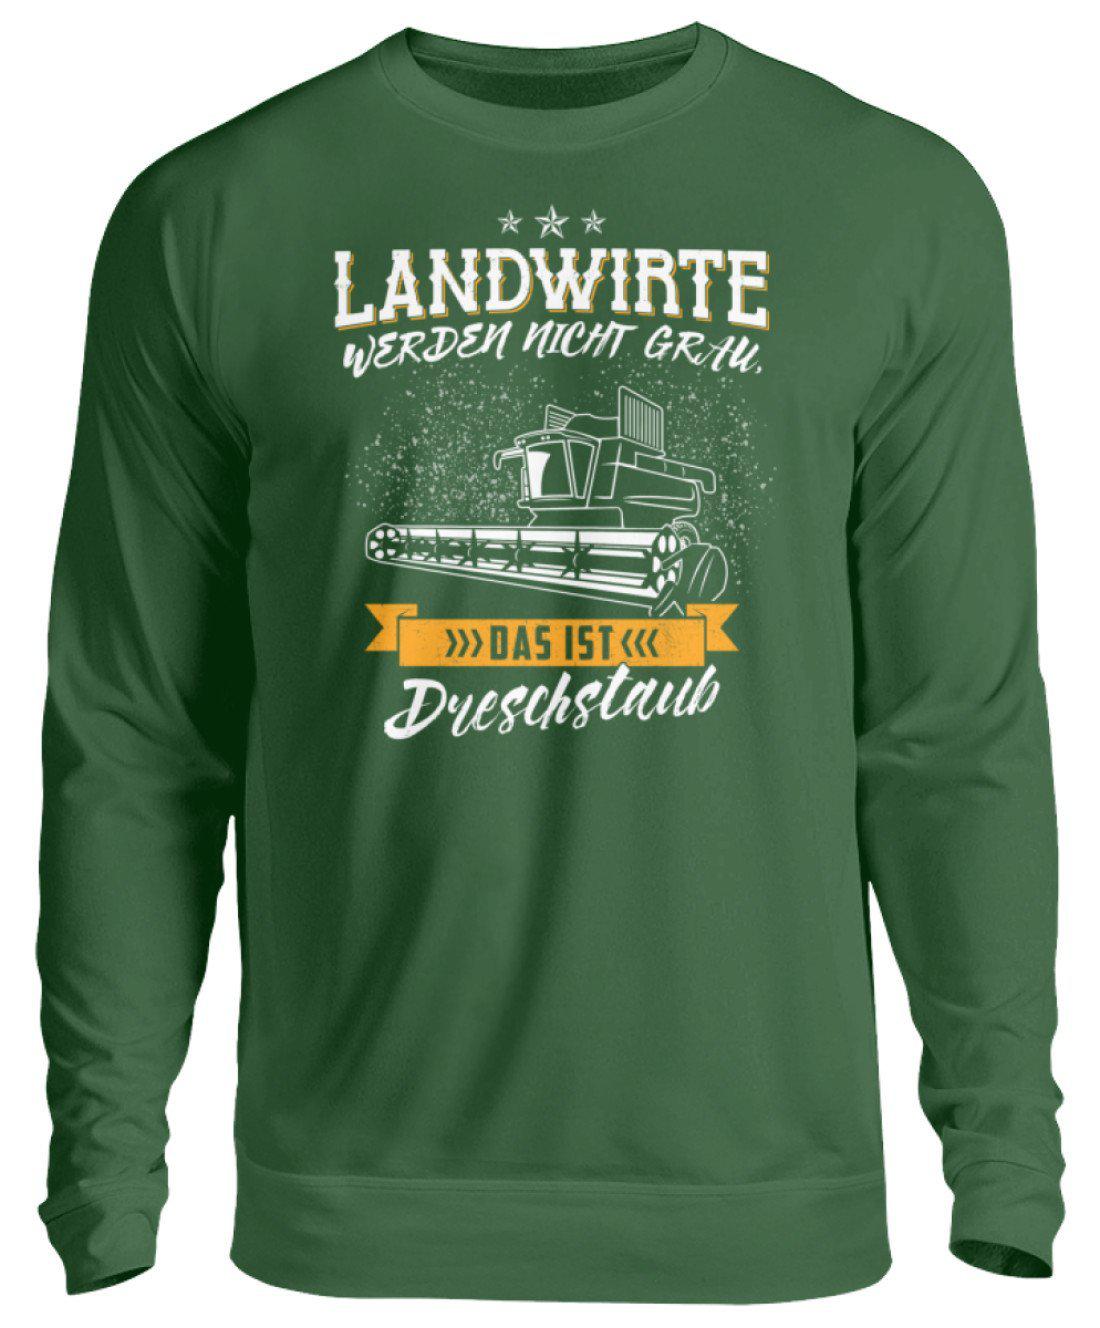 Landwirte grau Dreschstaub · Unisex Sweatshirt Pullover-Unisex Sweatshirt-Bottle Green-S-Agrarstarz